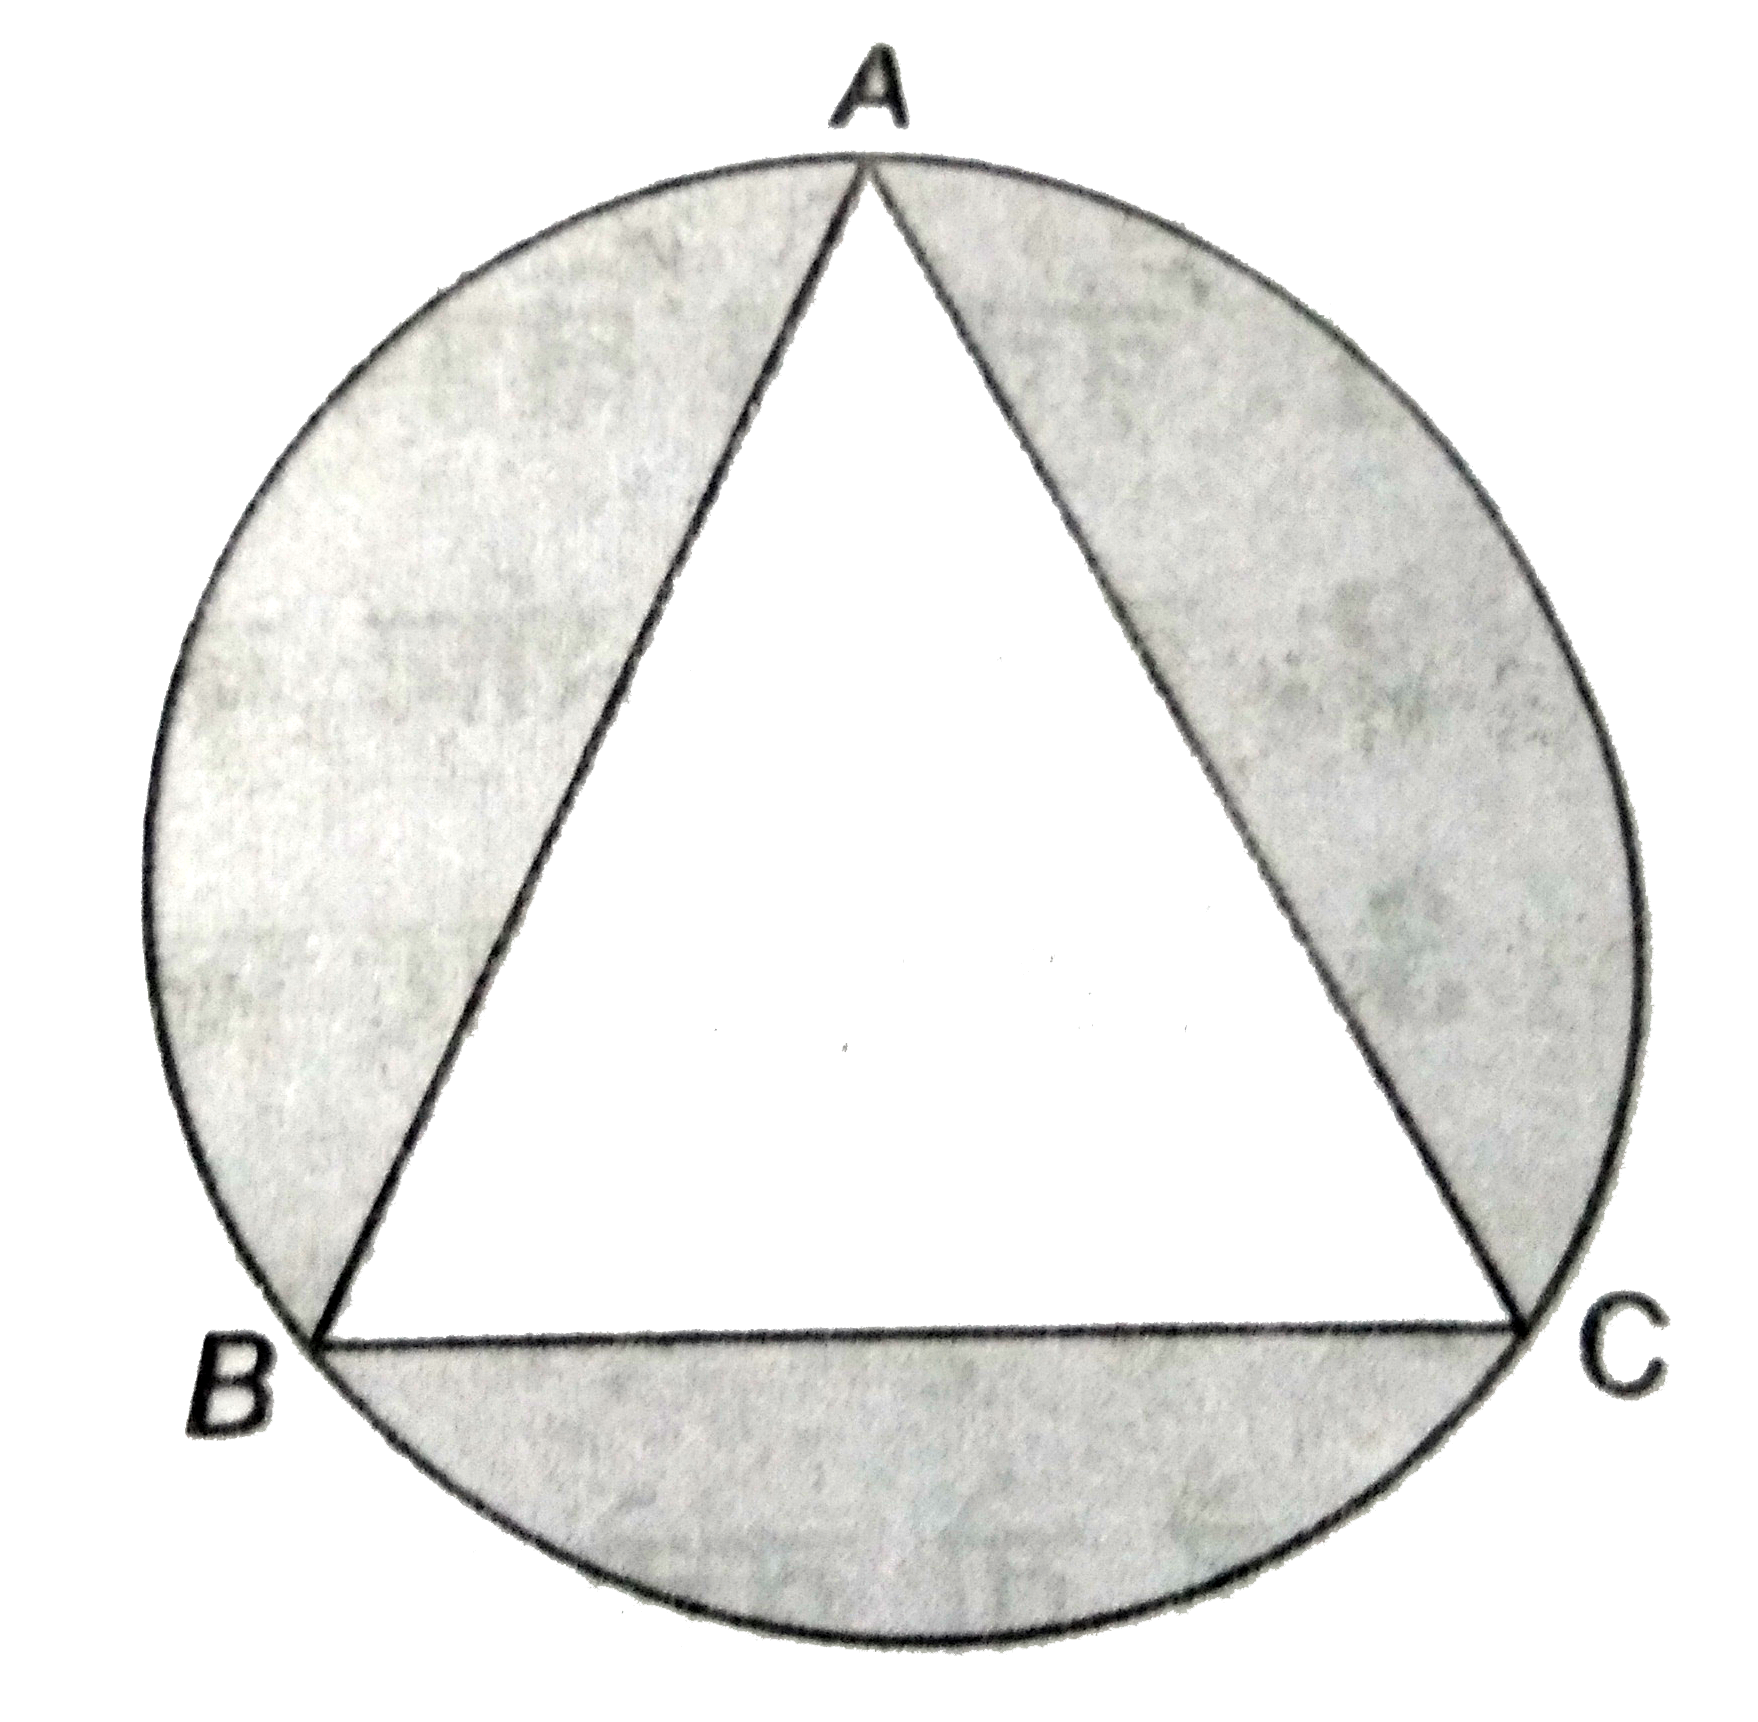 4 सेमी त्रिज्या के वृत्त के अंतर्गत  एक समबाहु  त्रिभुज  बना है । छायांकित  भाग  का क्षेत्रफल  ज्ञात कीजिए ।